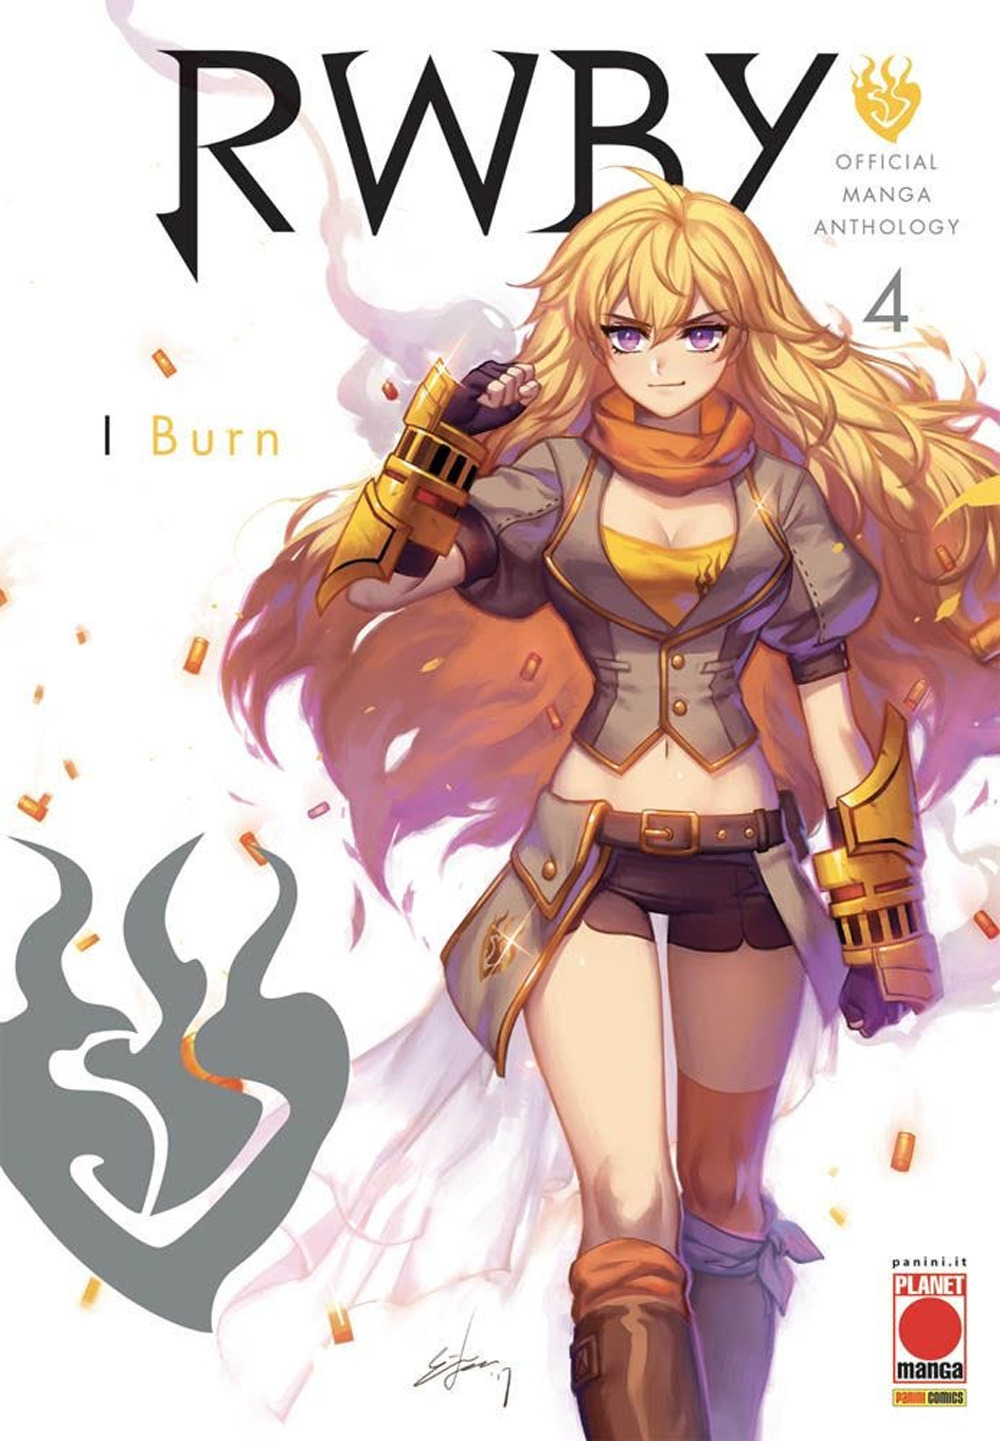 RWBY. Official manga anthology. Vol. 4: I burn